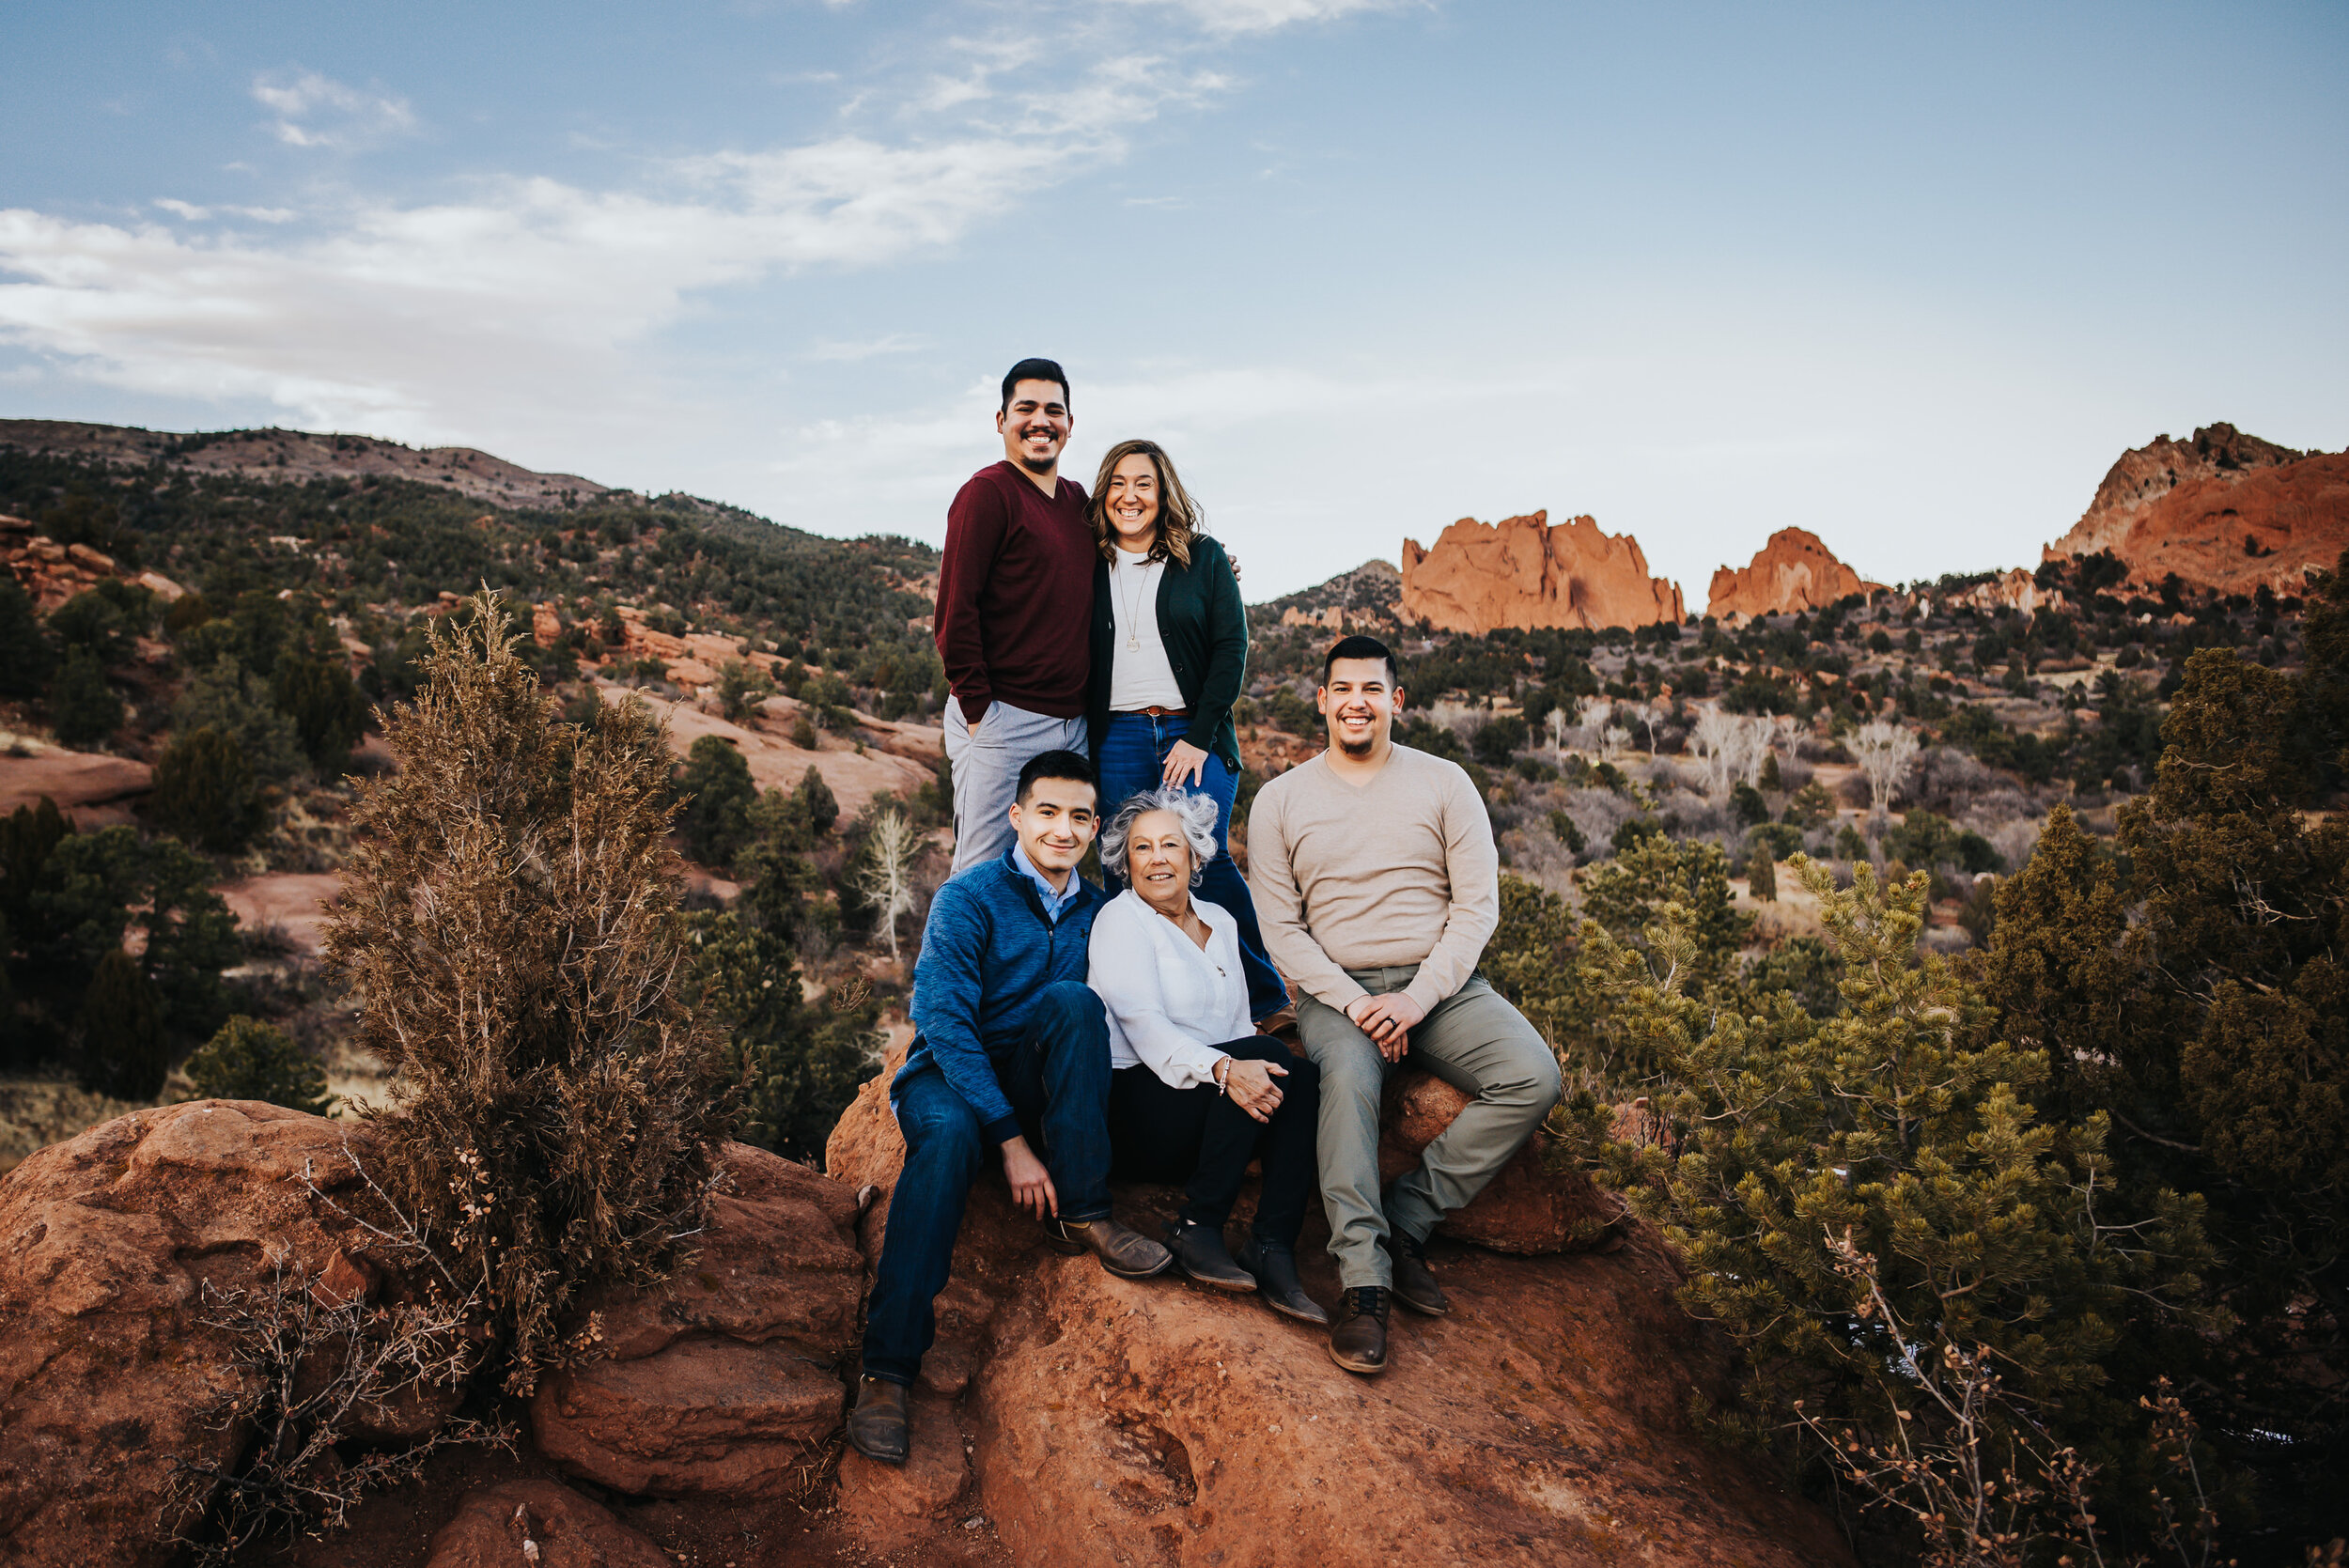 Steven Extended Family Session Colorado Springs Sunset Garden of the Gods Wild Prairie Photography-20-2021.jpg